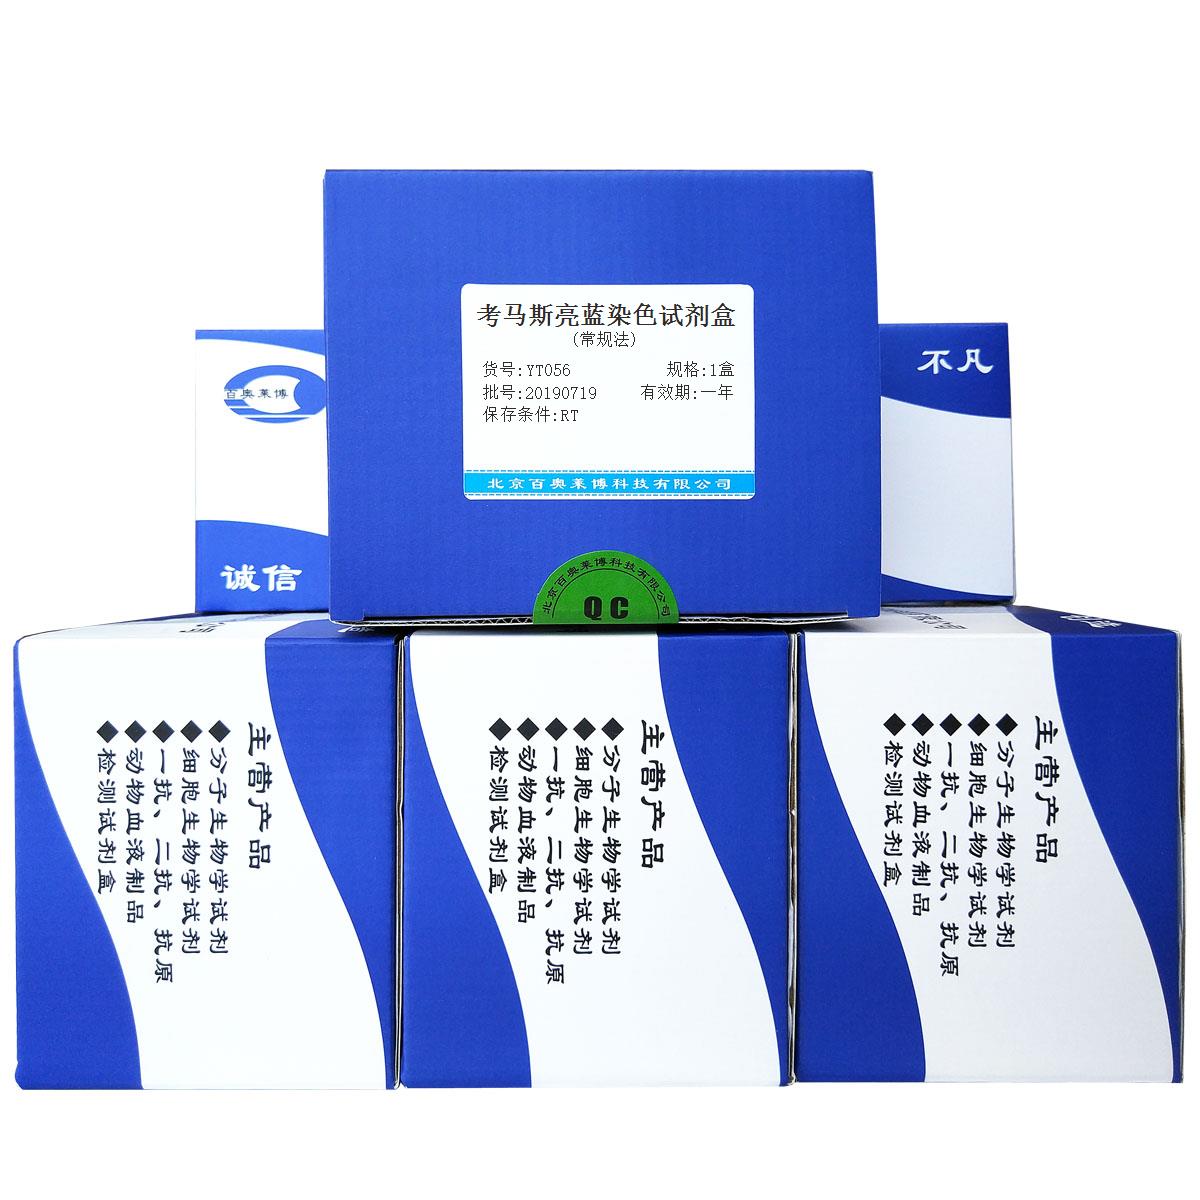 考马斯亮蓝染色试剂盒(常规法)北京供应商